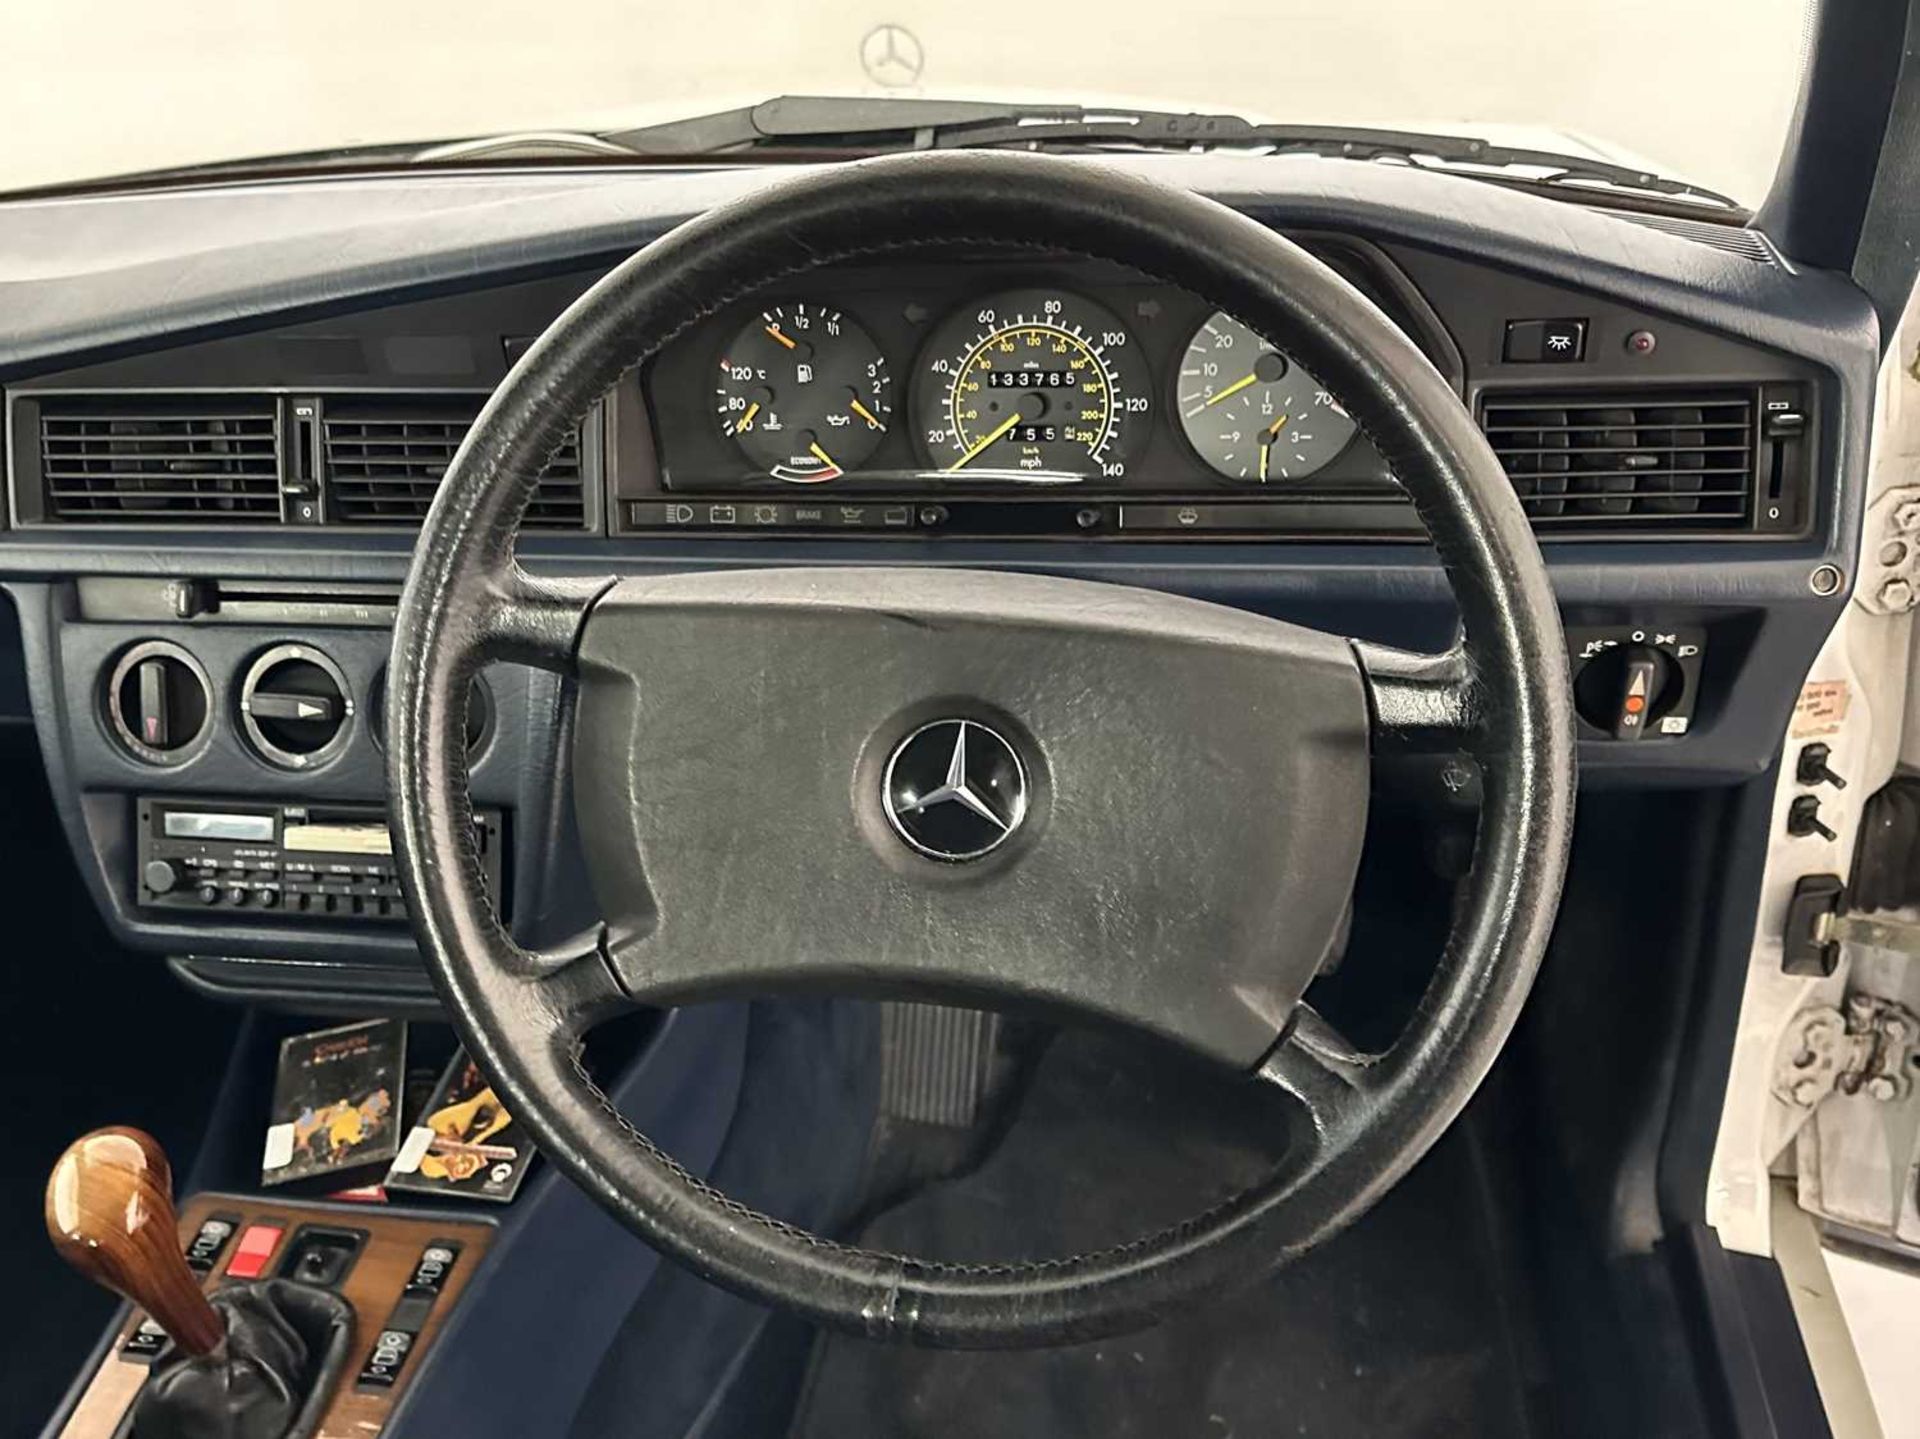 1989 Mercedes-Benz 190E - Image 30 of 34